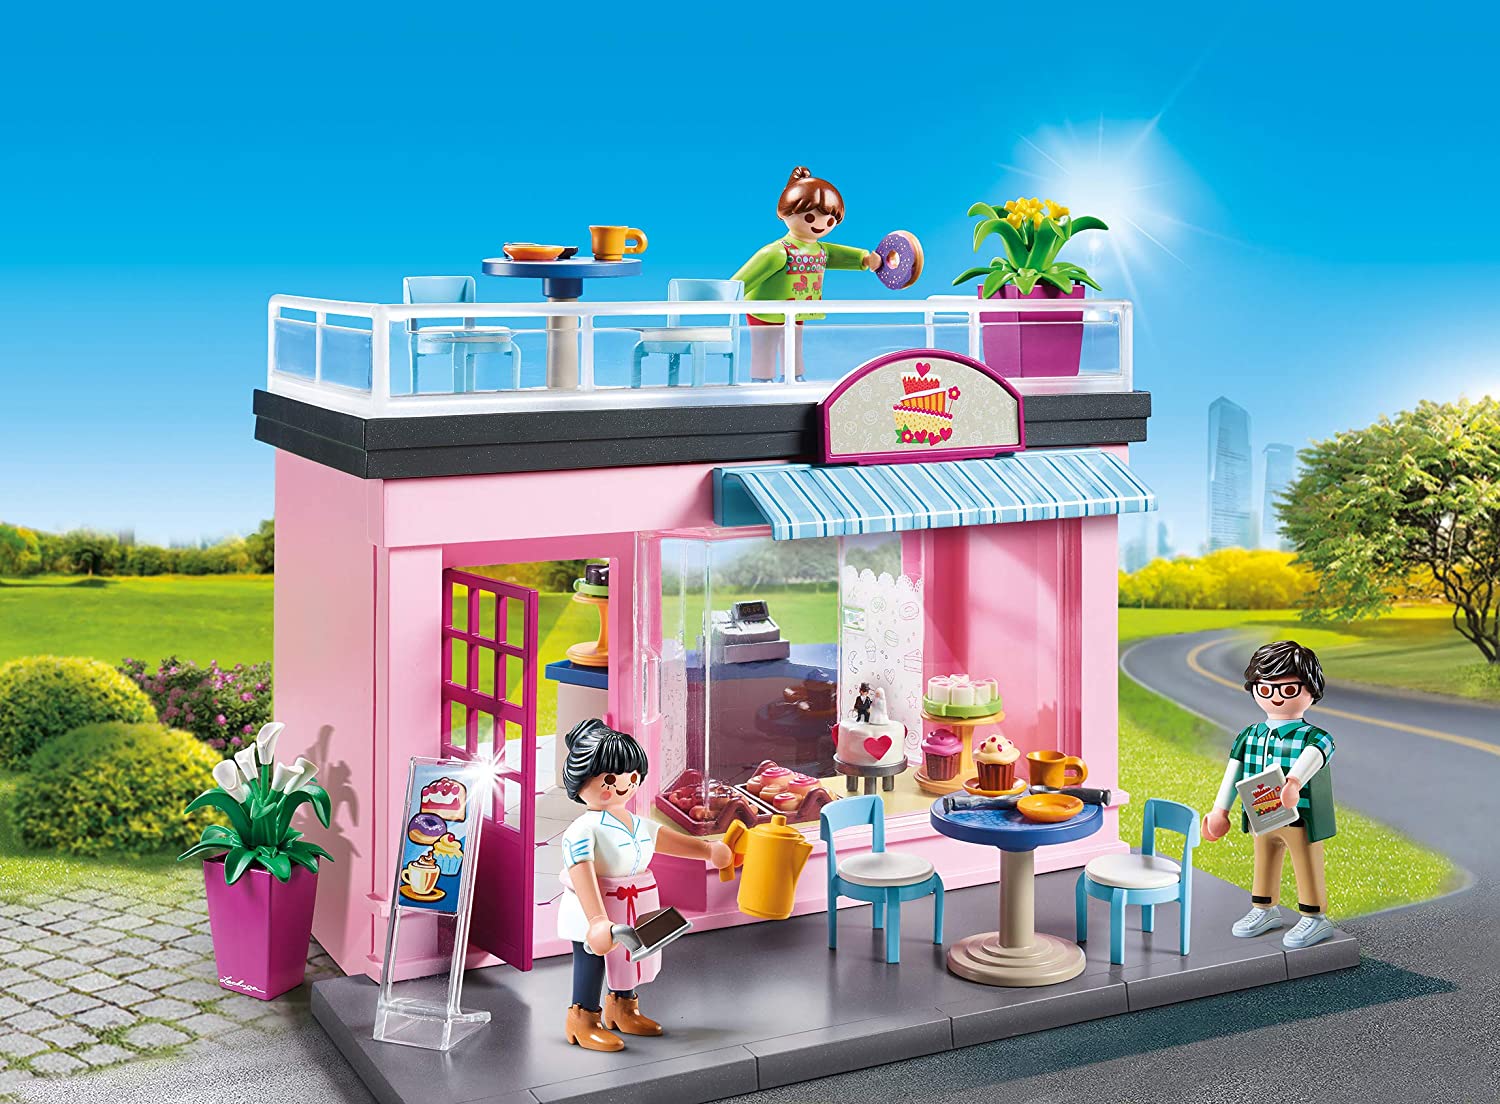 70016 - Playmobil City Life - Magasin de fleurs Playmobil : King